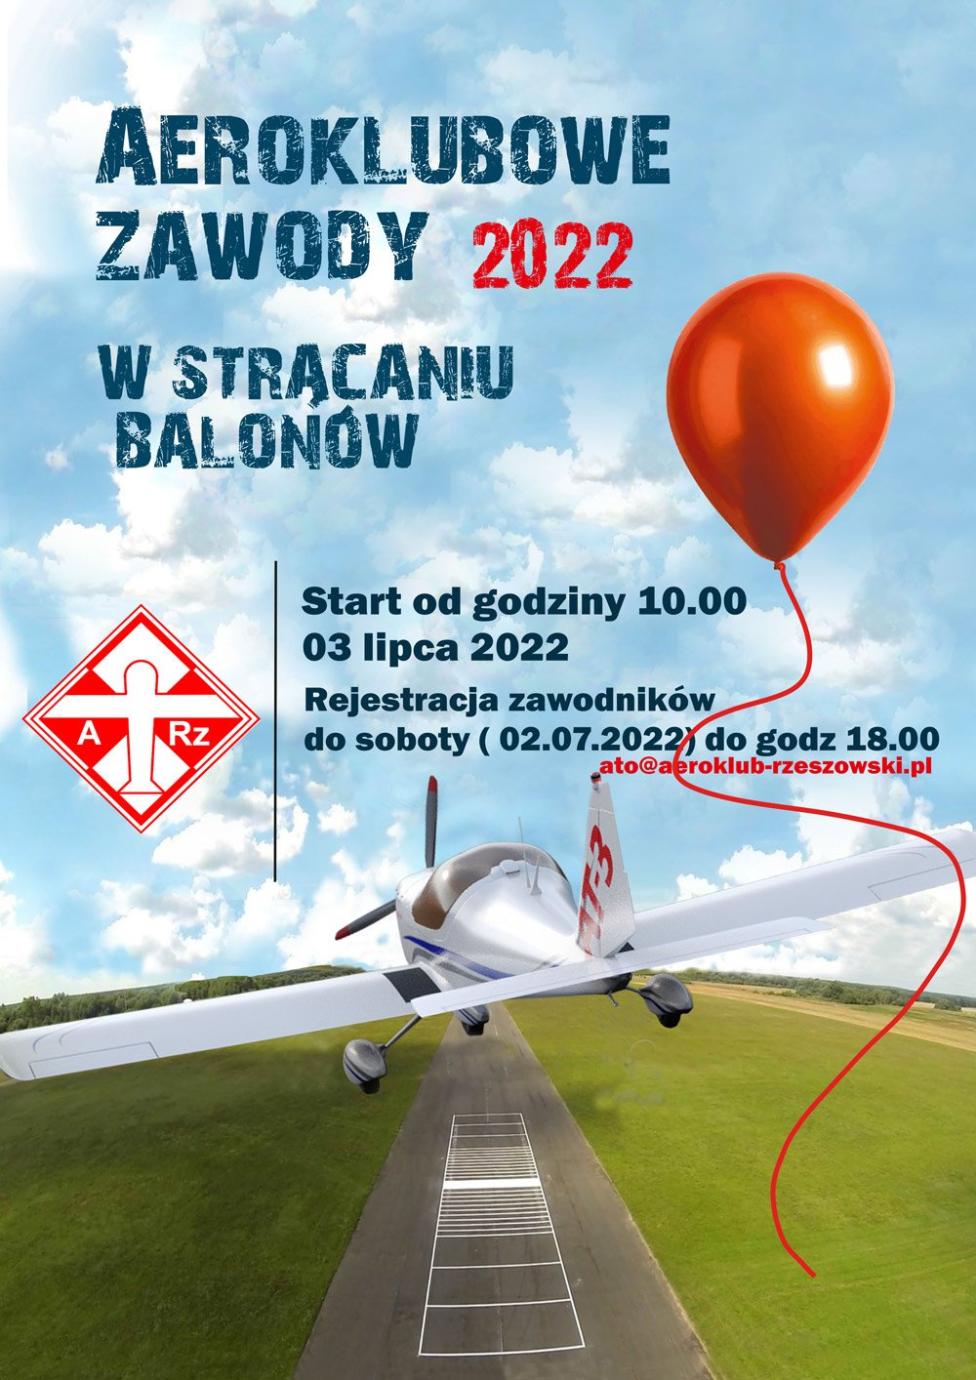 Aeroklubowe zawody samolotowe w lataniu precyzyjnym 2022 (fot. Aeroklub Rzeszowski)